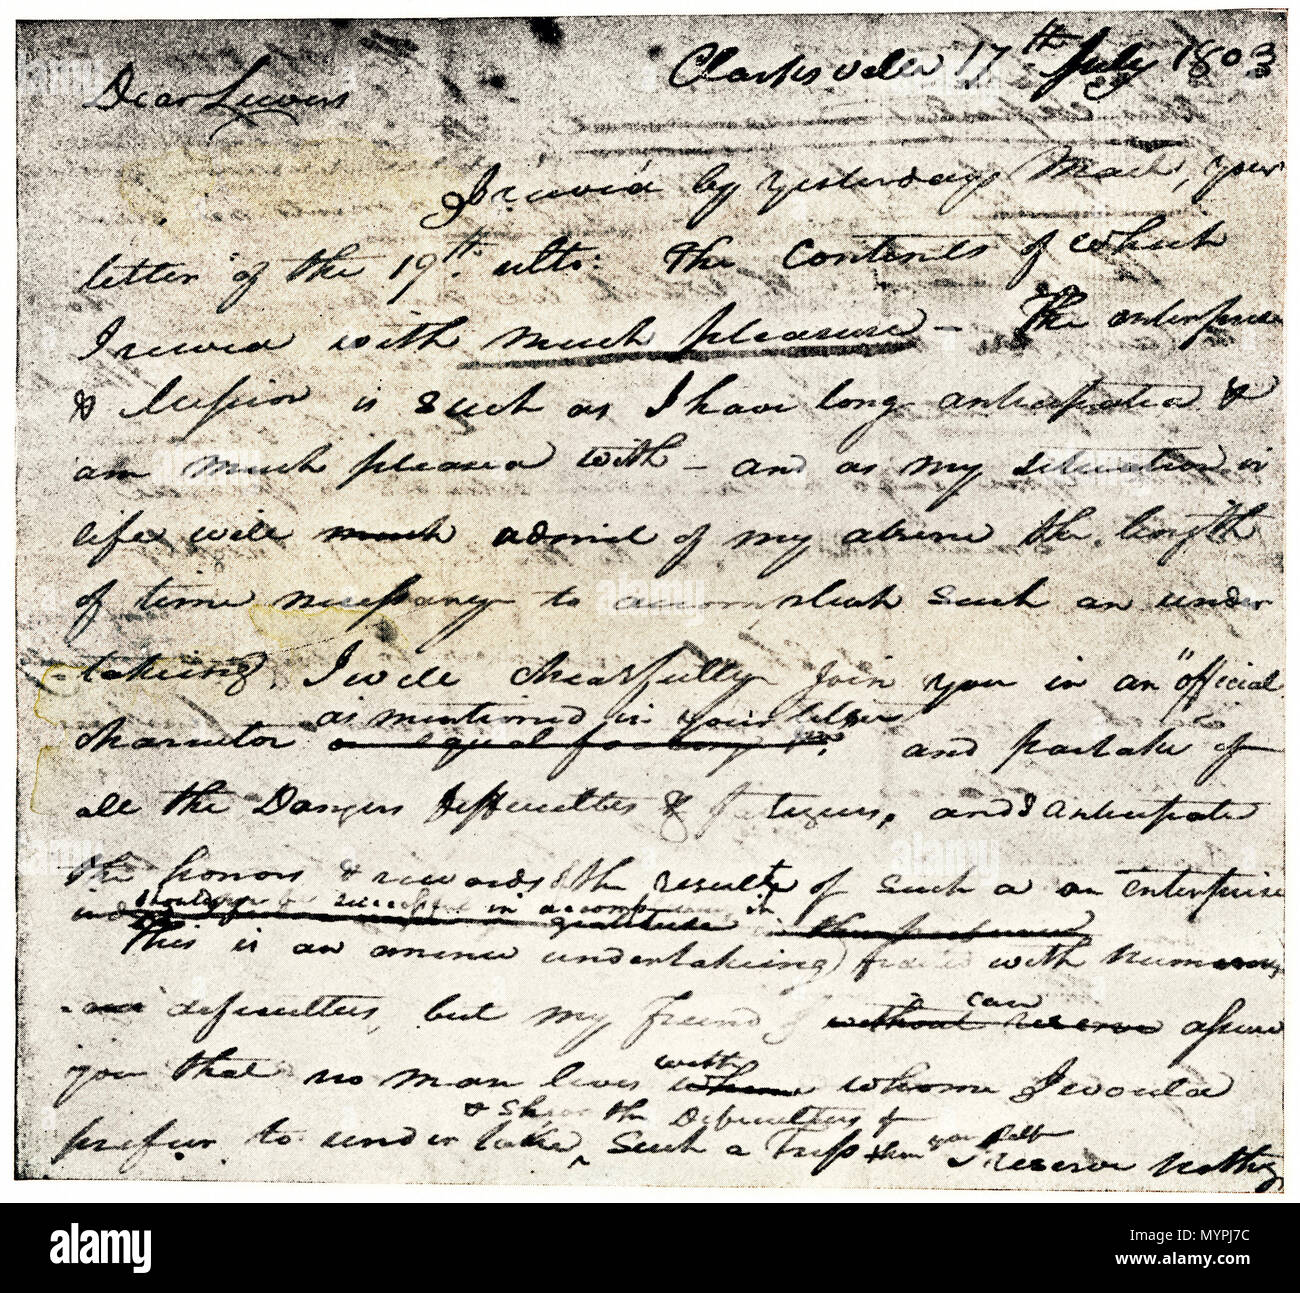 William Clark la lettera di accettazione di Lewis l'invito ad aderire al  corpo della scoperta expedition, datata Clarksville 1803. Mezzitoni  stampato con il lavaggio Foto stock - Alamy